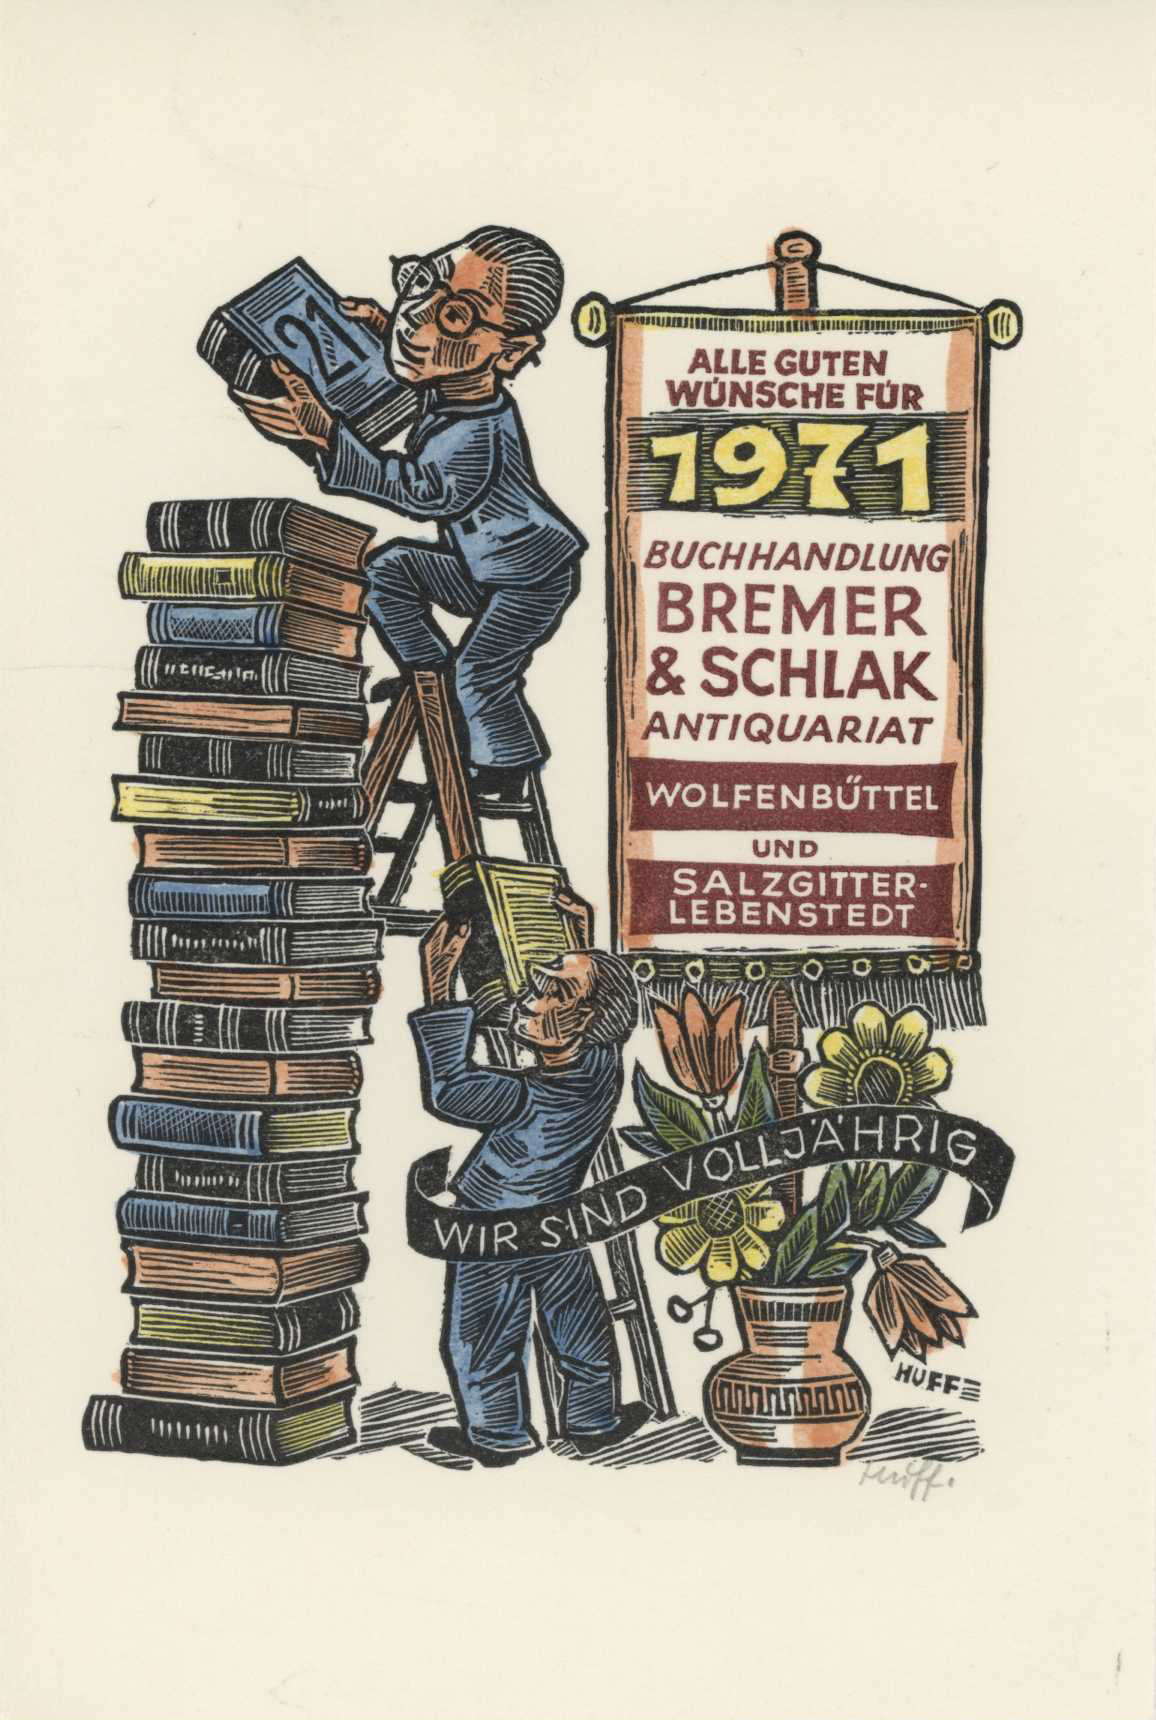 Featured image for “Gute Wunschen 1971 Bremer & Schlak”